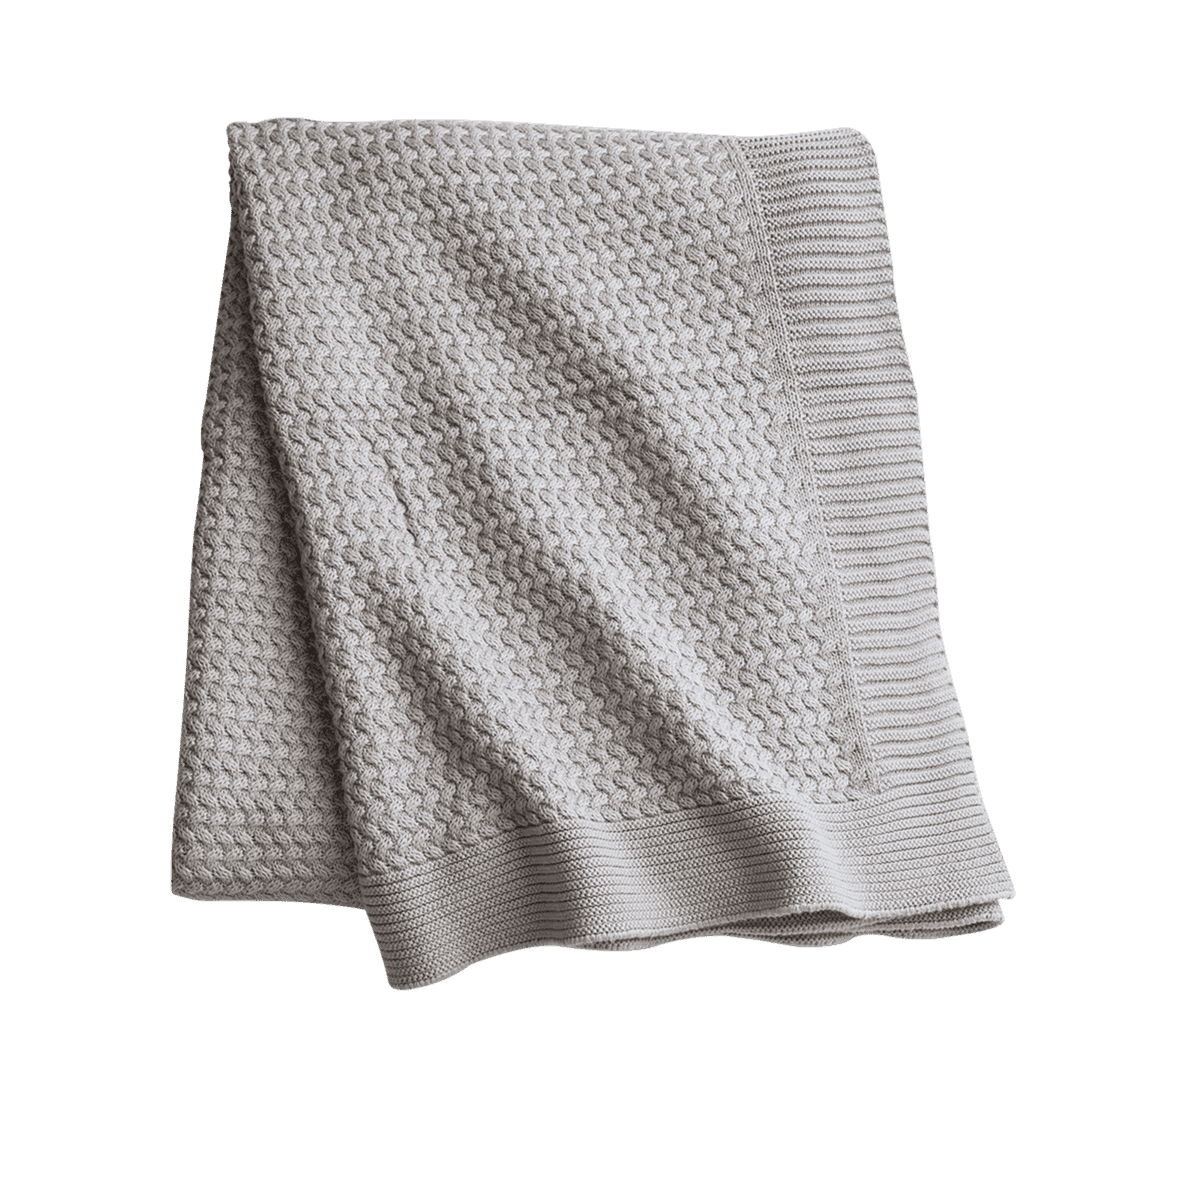 Alcor 100% Cotton Throw Blanket